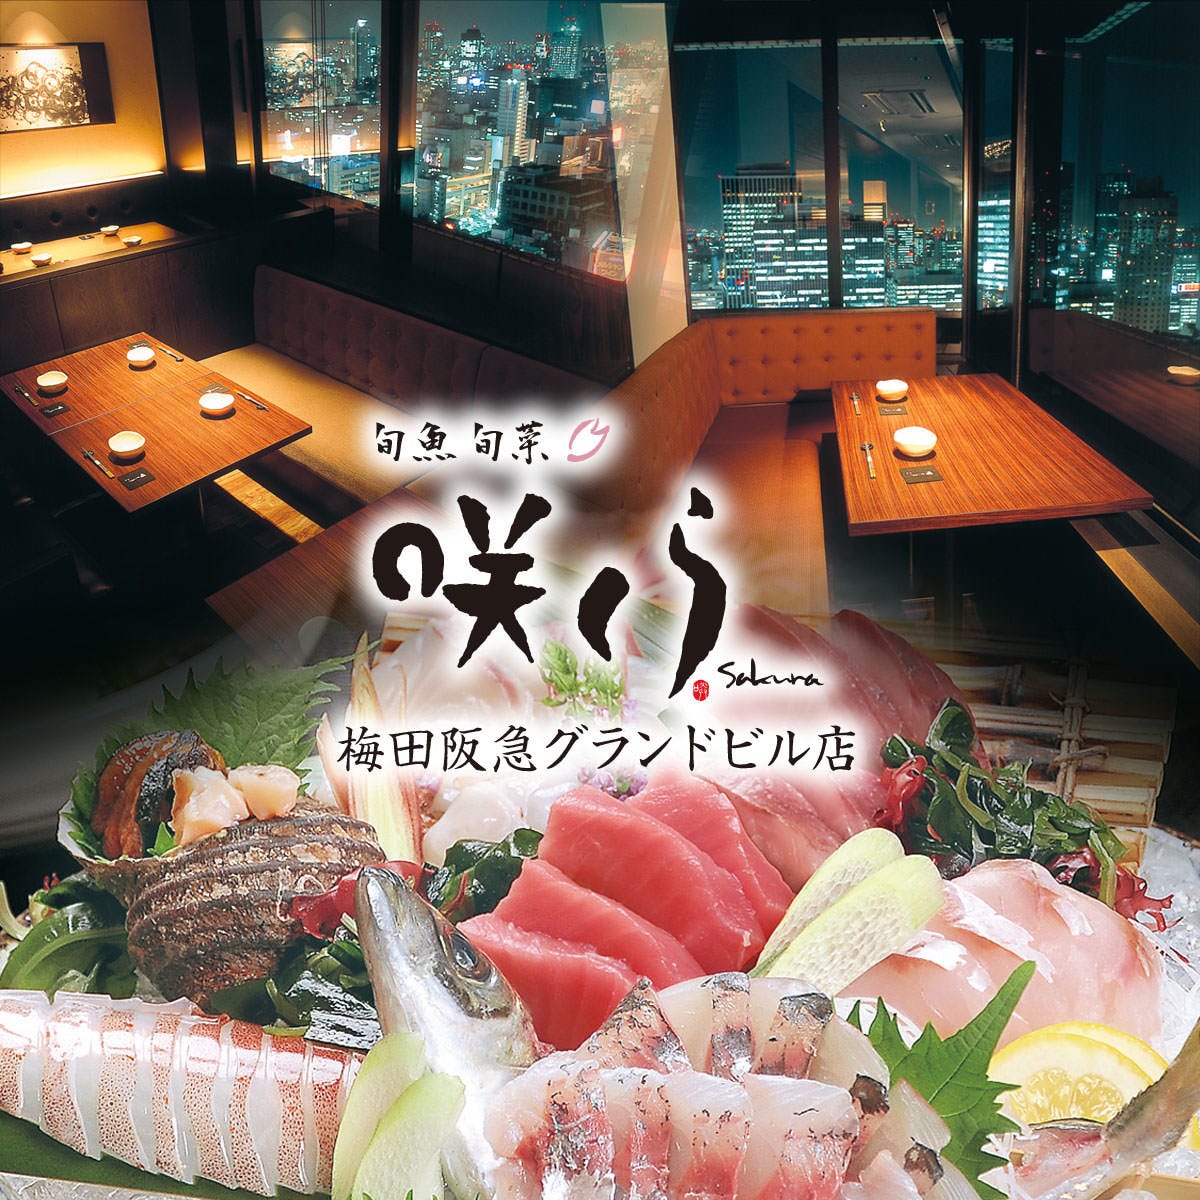 大阪府 海鮮料理 合コンにおすすめのグルメ お店情報 サントリーグルメガイド